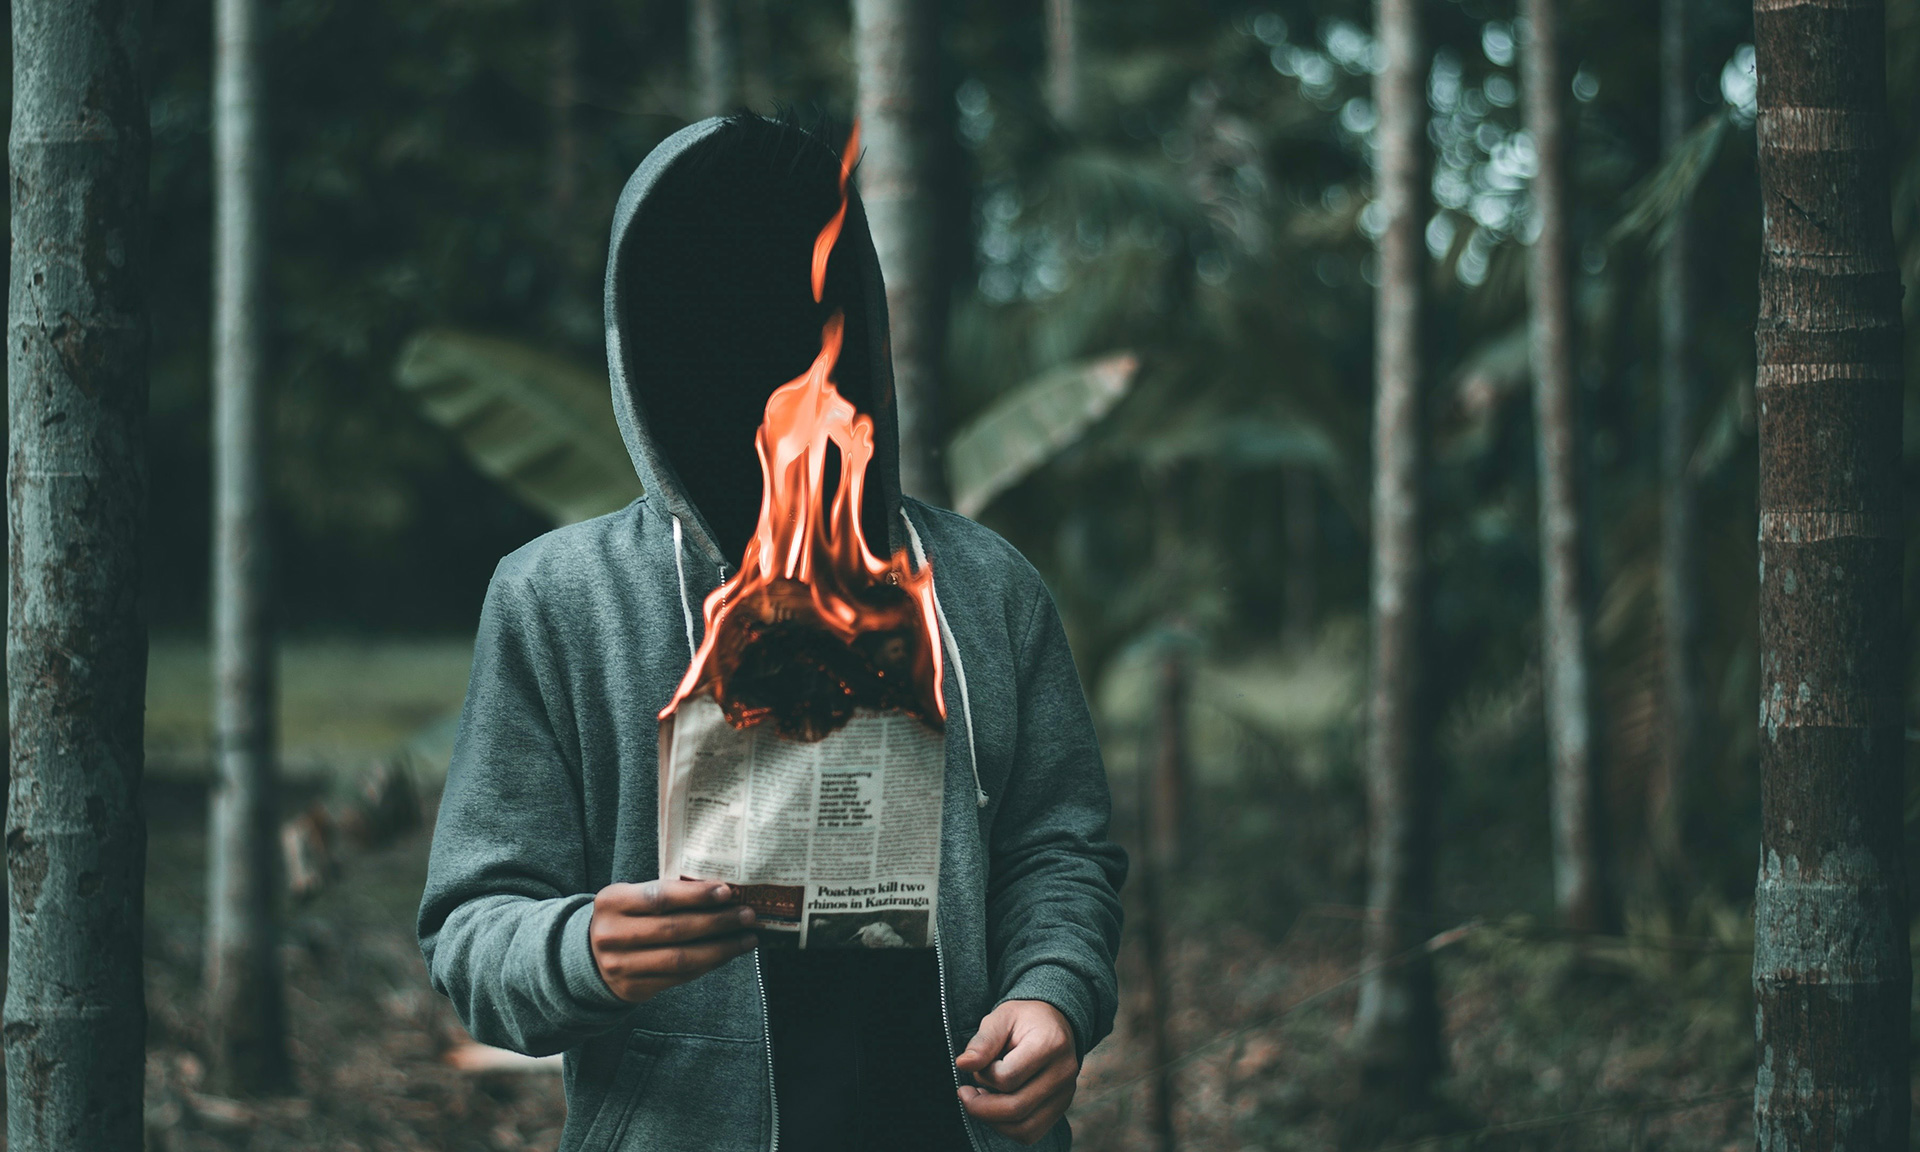 imagem ilustratriva de rapaz branco encapuzado segurando uma folha de jornal em chamas